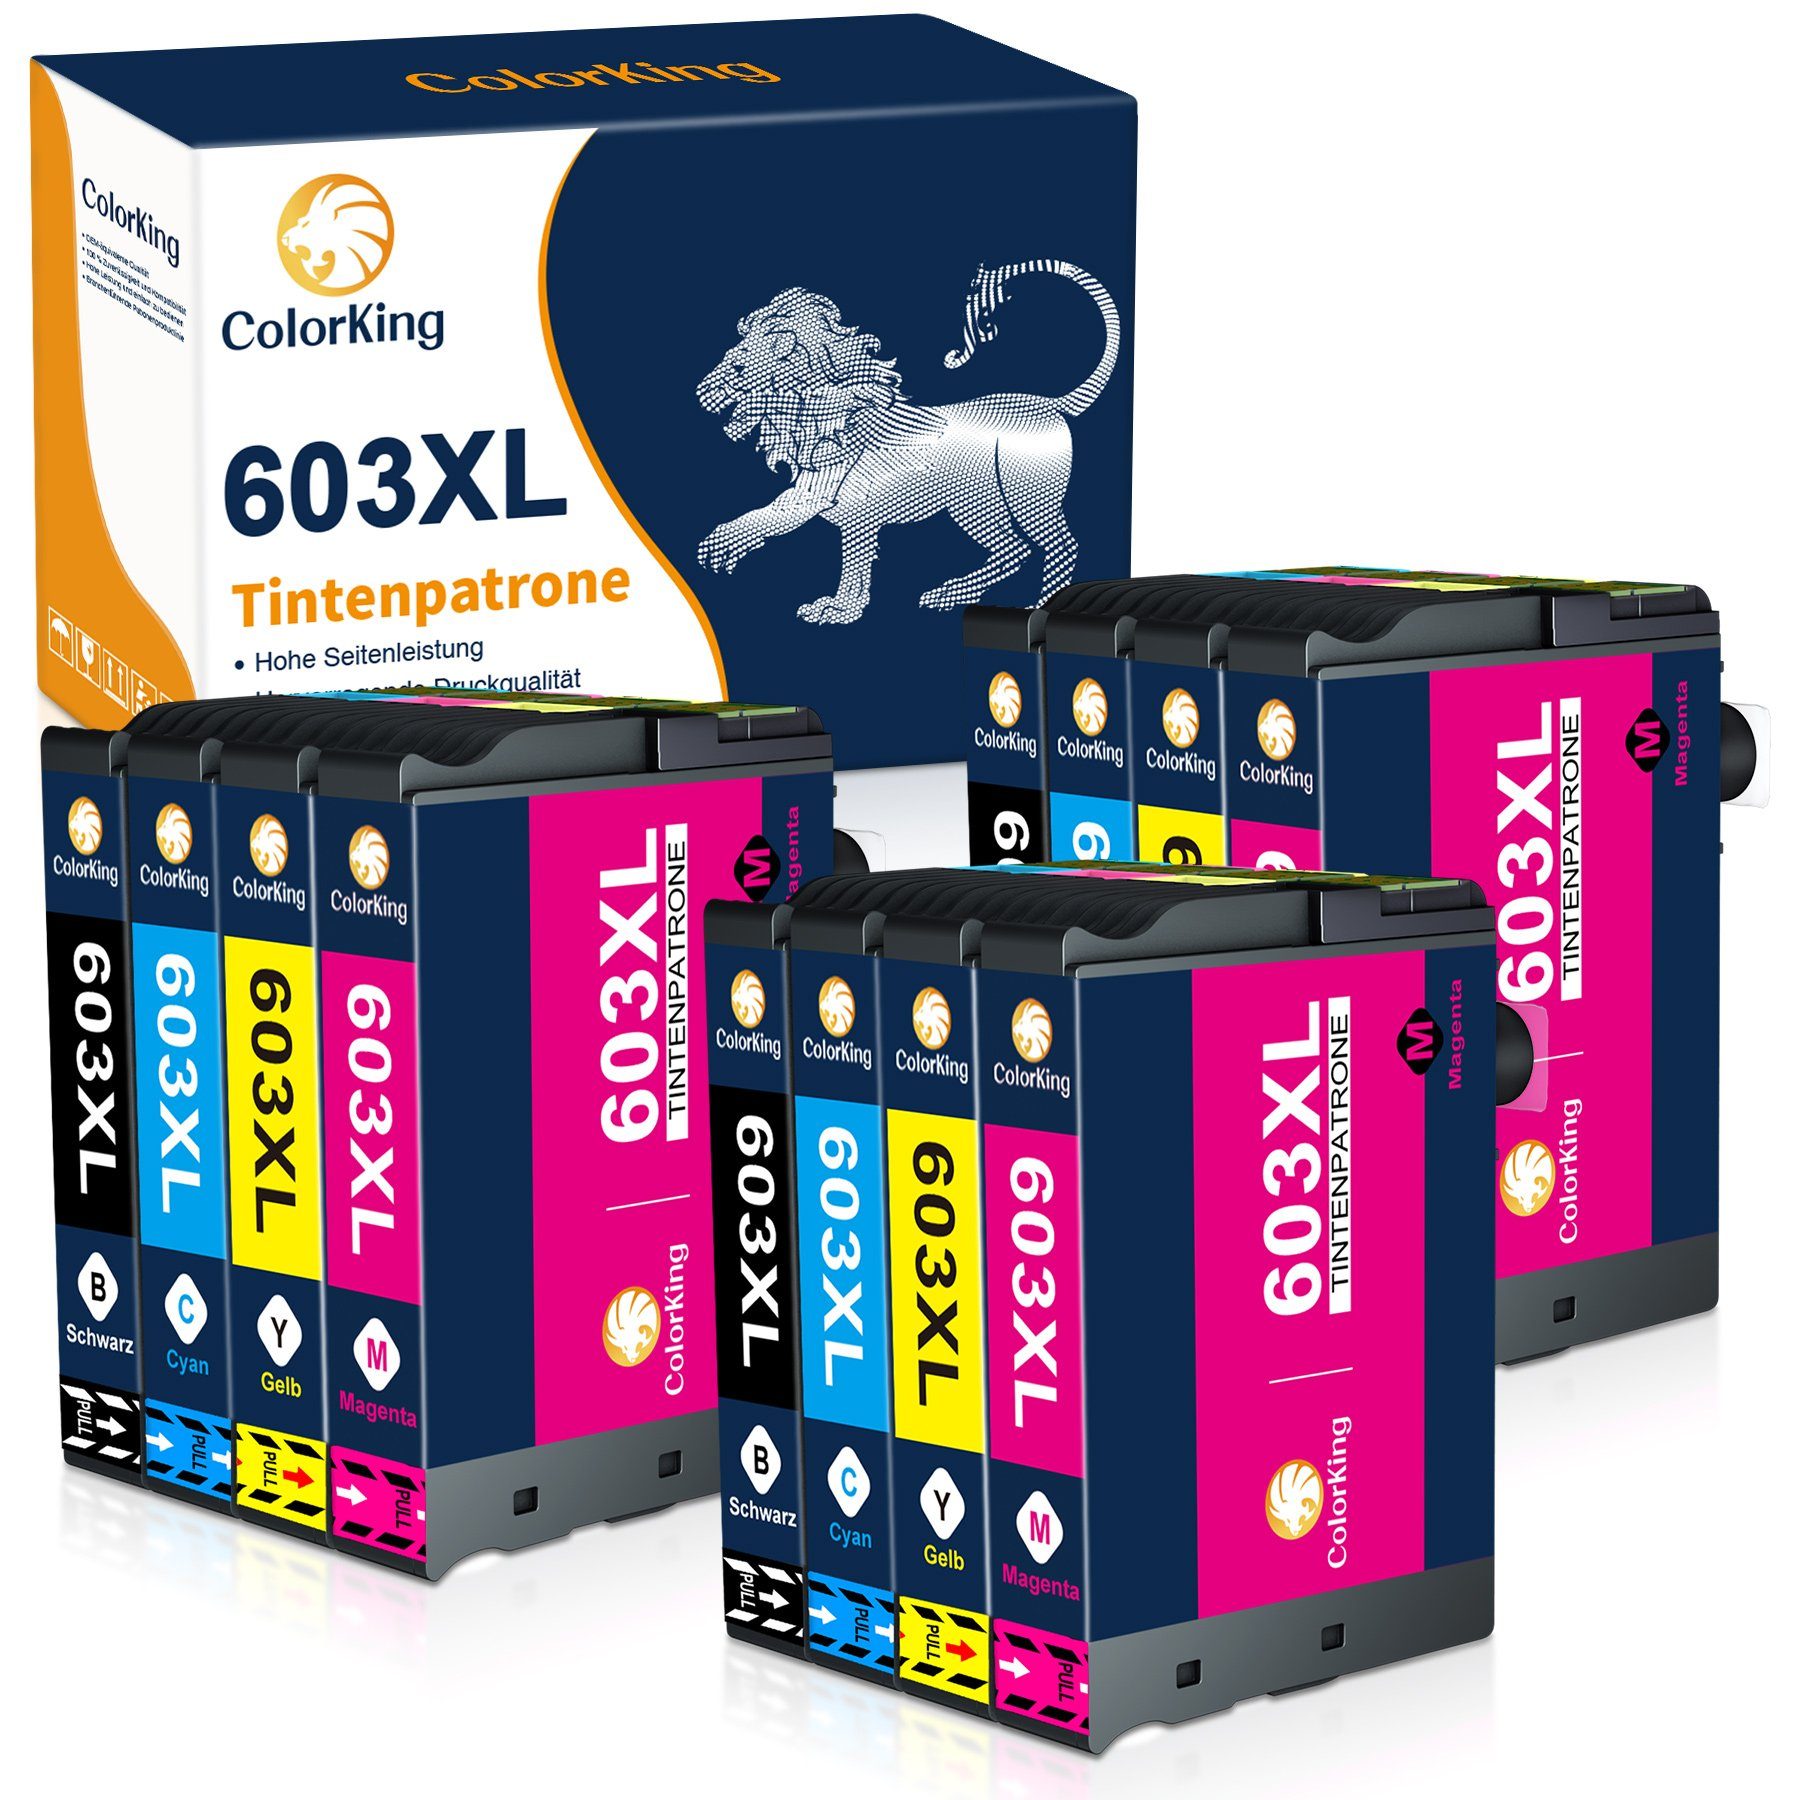 ColorKing 603XL multipack Tintenpatrone (Ersatz für Workforce WF-2835 2850 2830 2810) 3* Schwarz, 3* Cyan, 3* Magenta, 3* Gelb (12er Set)